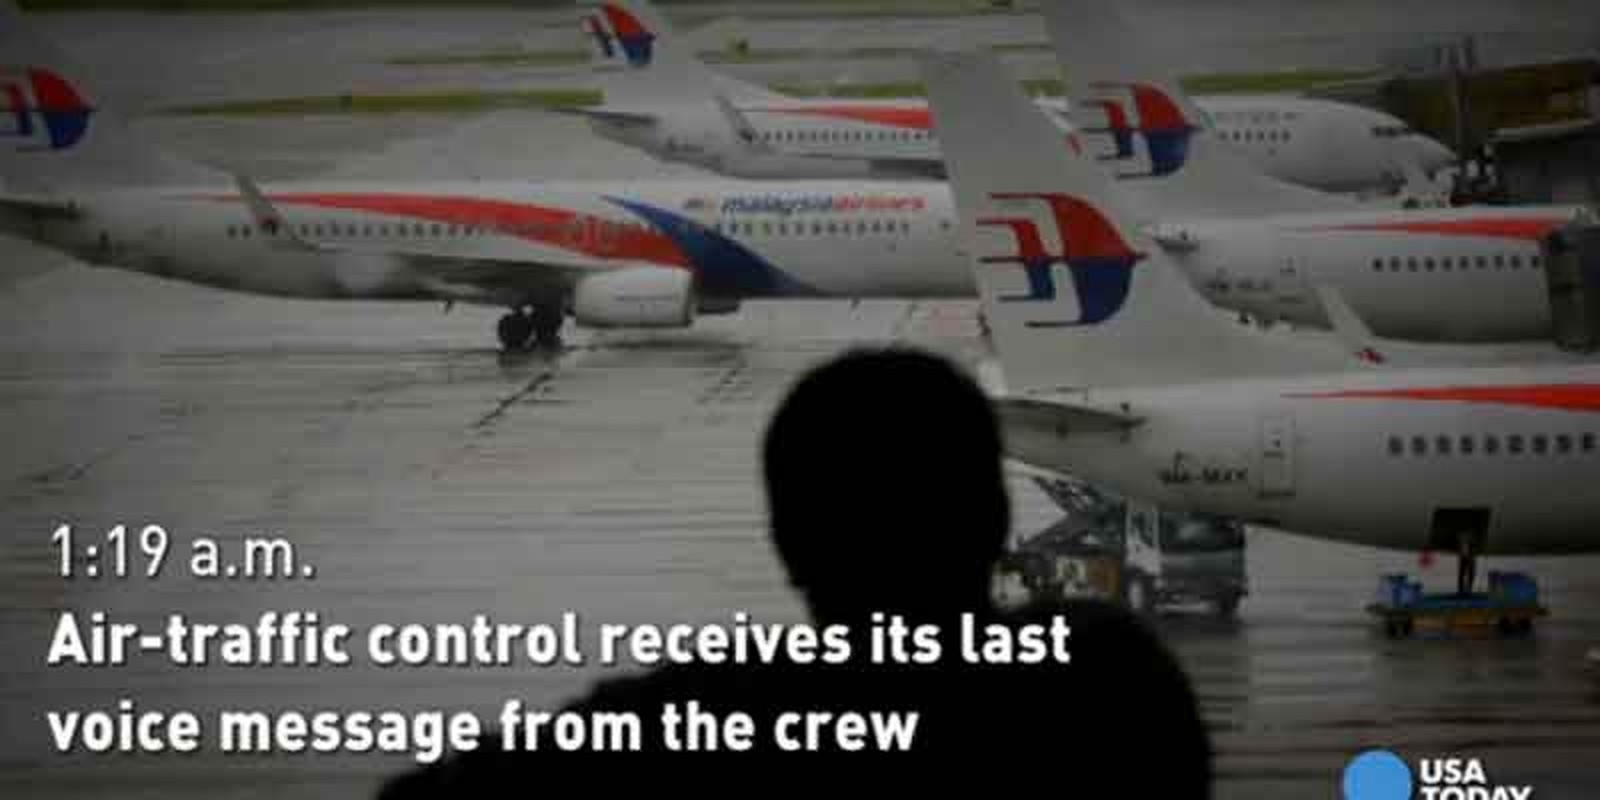 Nhin lai mot nam khac khoai tim kiem MH370-Hinh-5